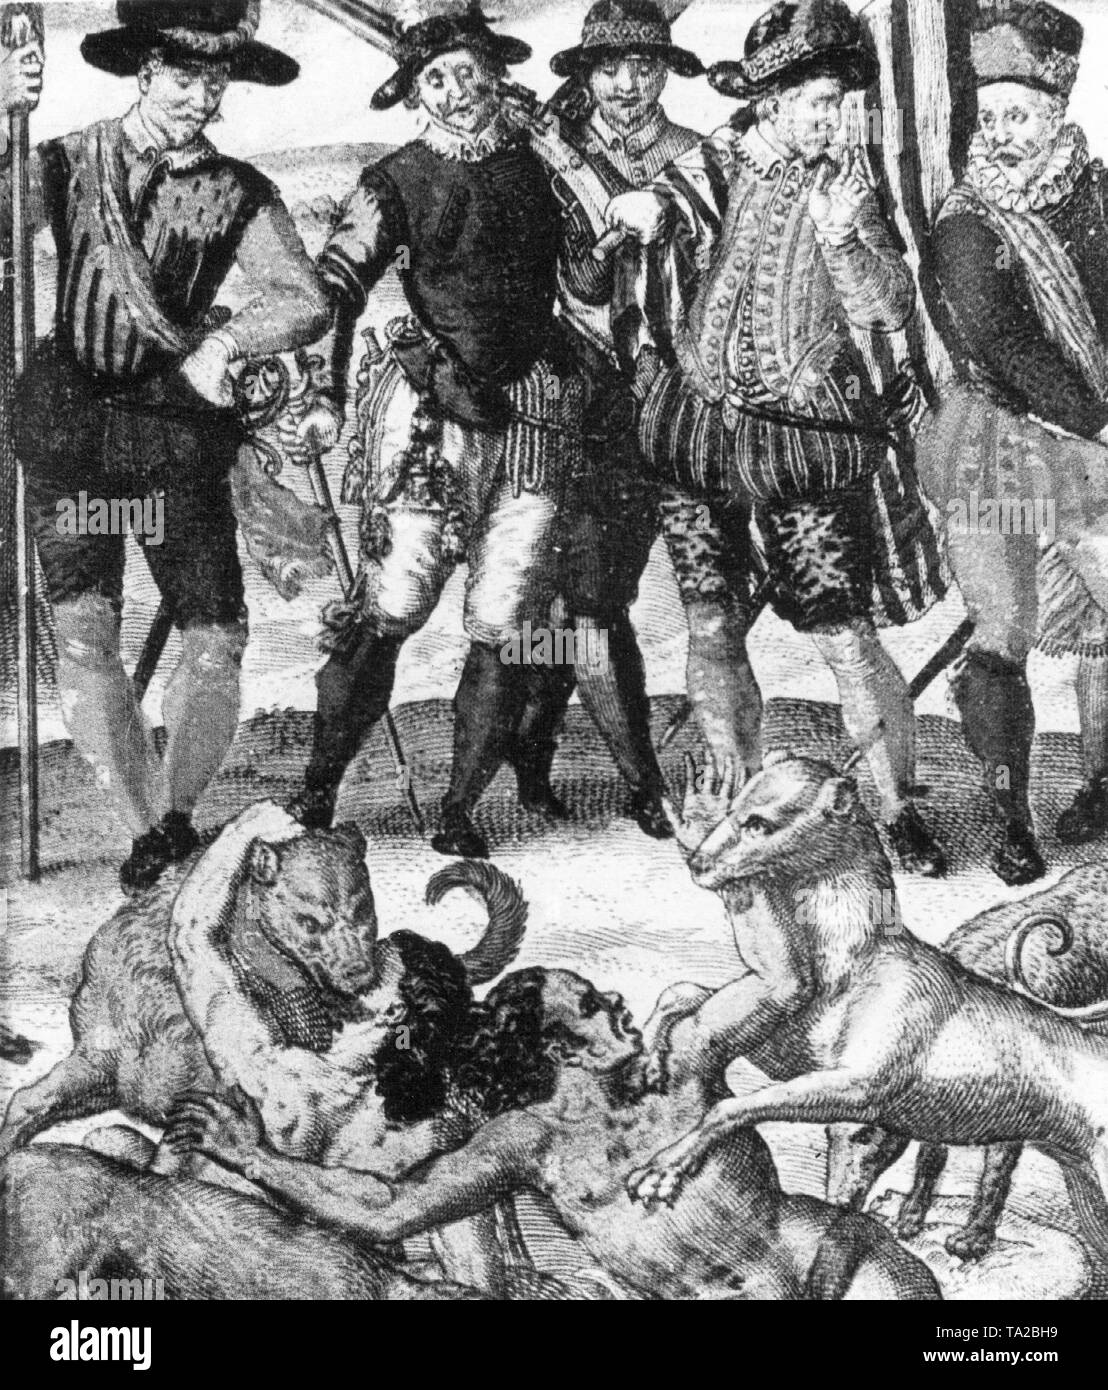 Après Pizarro a massacré des milliers de des Incas en Cajamarca en 1532 et capturé le roi Inca Atahualpa, a commencé la chasse après l'or des Incas. L'illustration montre comment Pizarro formés son des chiens d'attaque de sic sur les Indiens qui ne veulent pas céder leur or à lui. Banque D'Images